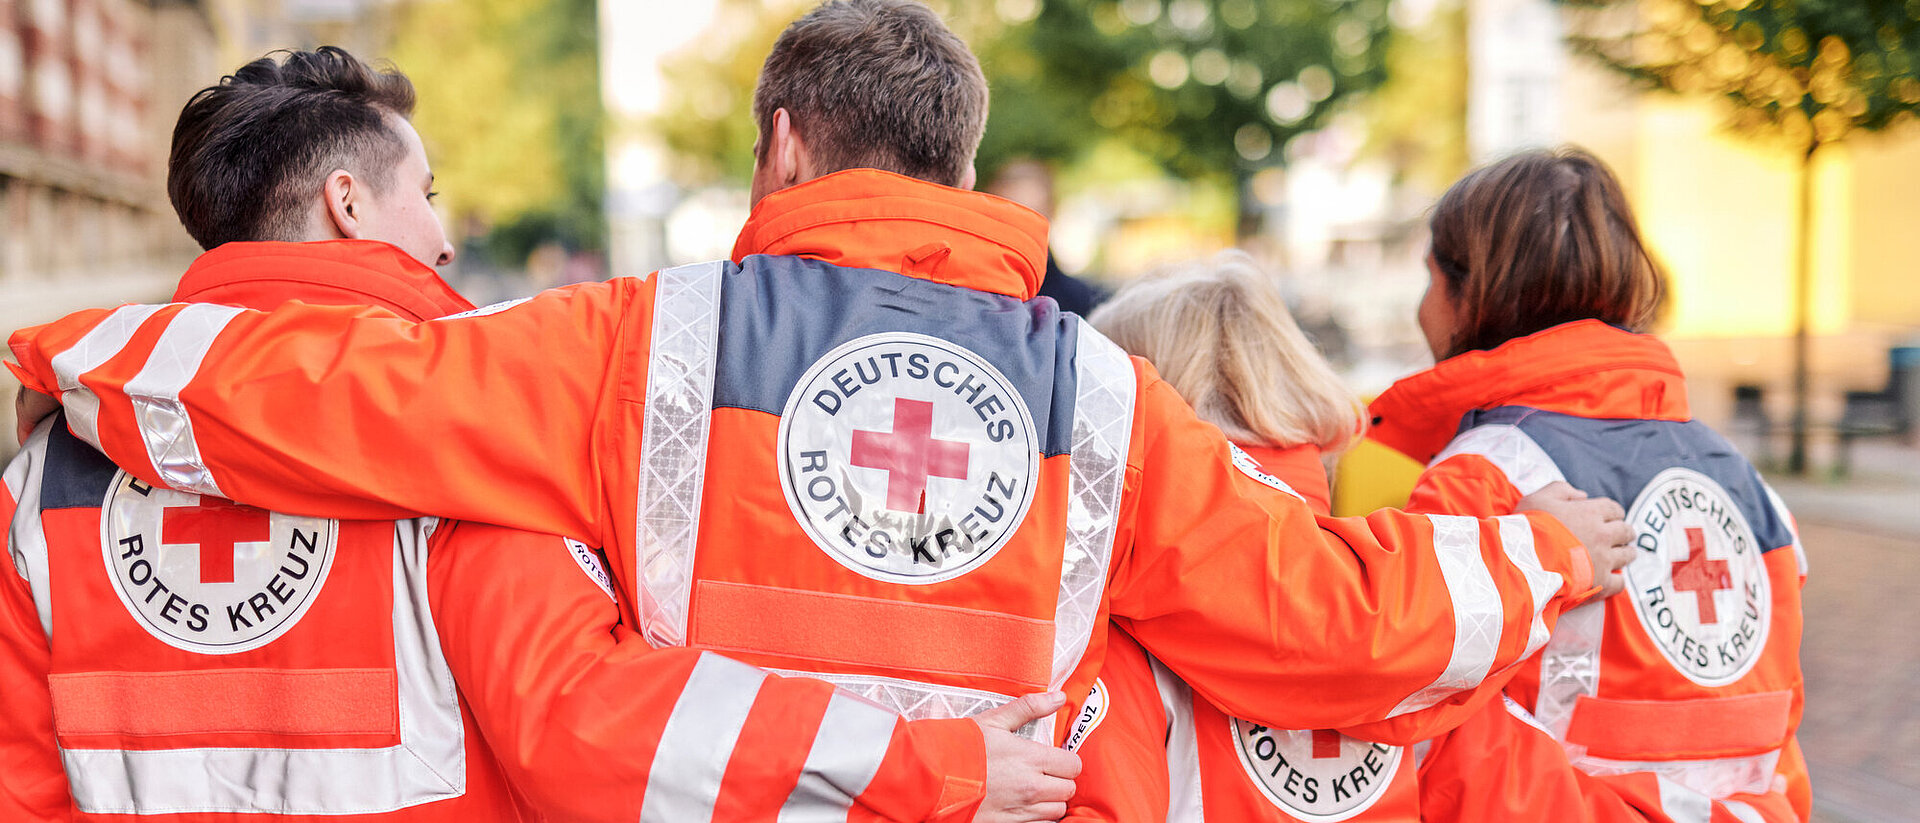 Vier Personen, die leuchtend orangefarbene Rettungswesten des Deutschen Roten Kreuzes tragen, stehen mit verschränkten Armen in einer städtischen Umgebung. Auf den Rücken der Westen sind das Logo und der Schriftzug "Deutsches Rotes Kreuz" deutlich sichtbar. Die Gruppe zeigt Solidarität und Zusammenhalt.